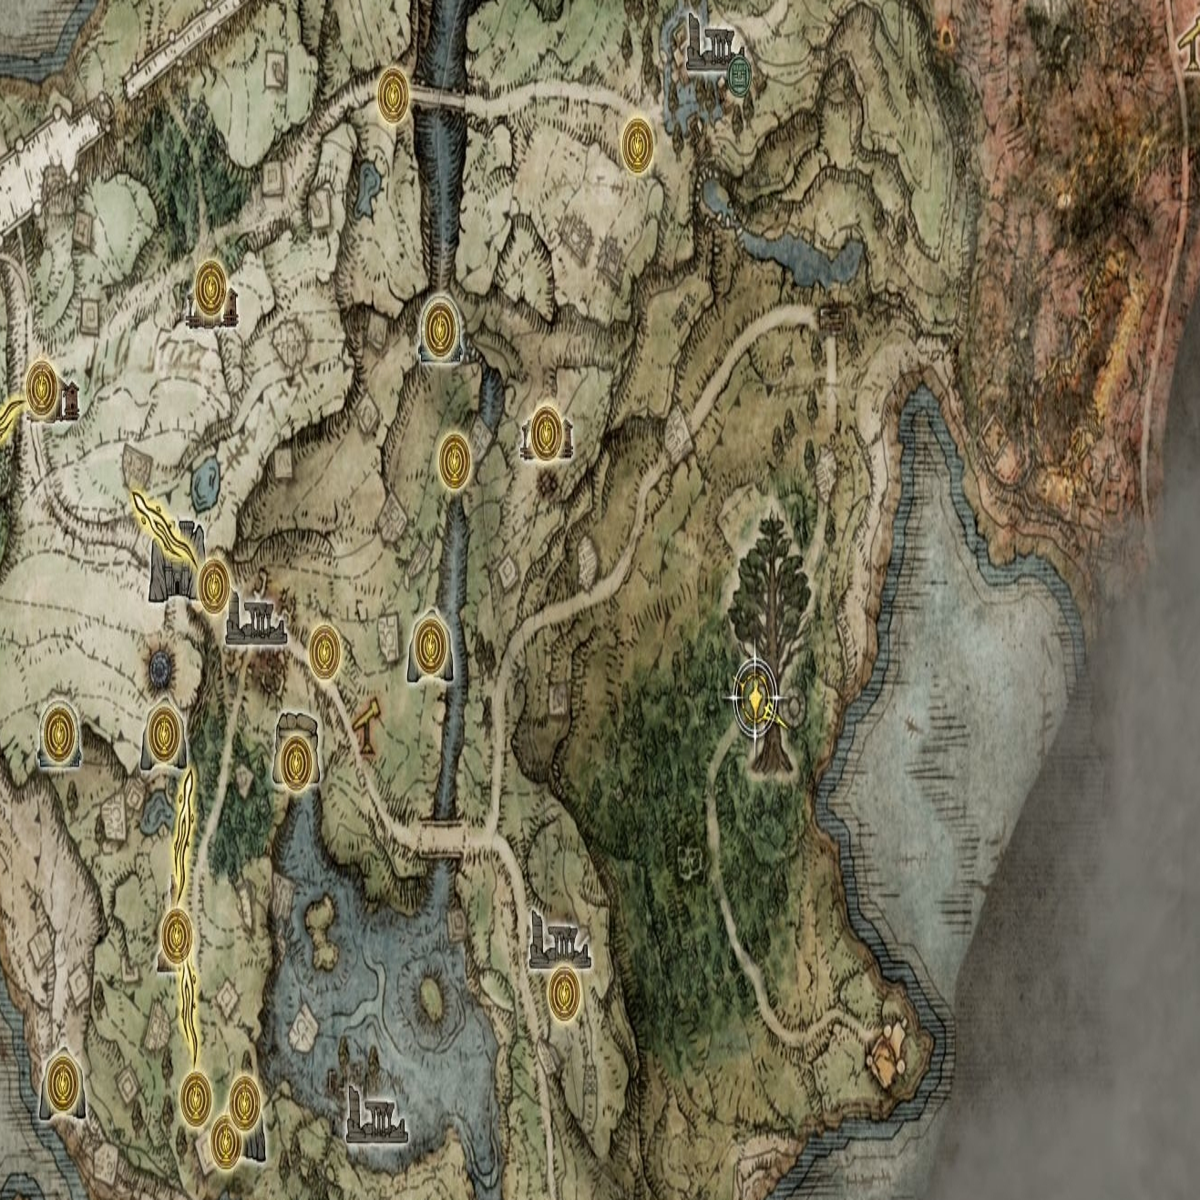 Bản đồ Elden Ring sẽ khiến bạn cảm thấy như đang khám phá một thế giới thần thoại rộng lớn với đầy đủ các tình huống tiếp đất và sản phẩm đầy sáng tạo. Đừng bỏ lỡ cơ hội khám phá những điều thú vị trong bản đồ đầy bất ngờ này.